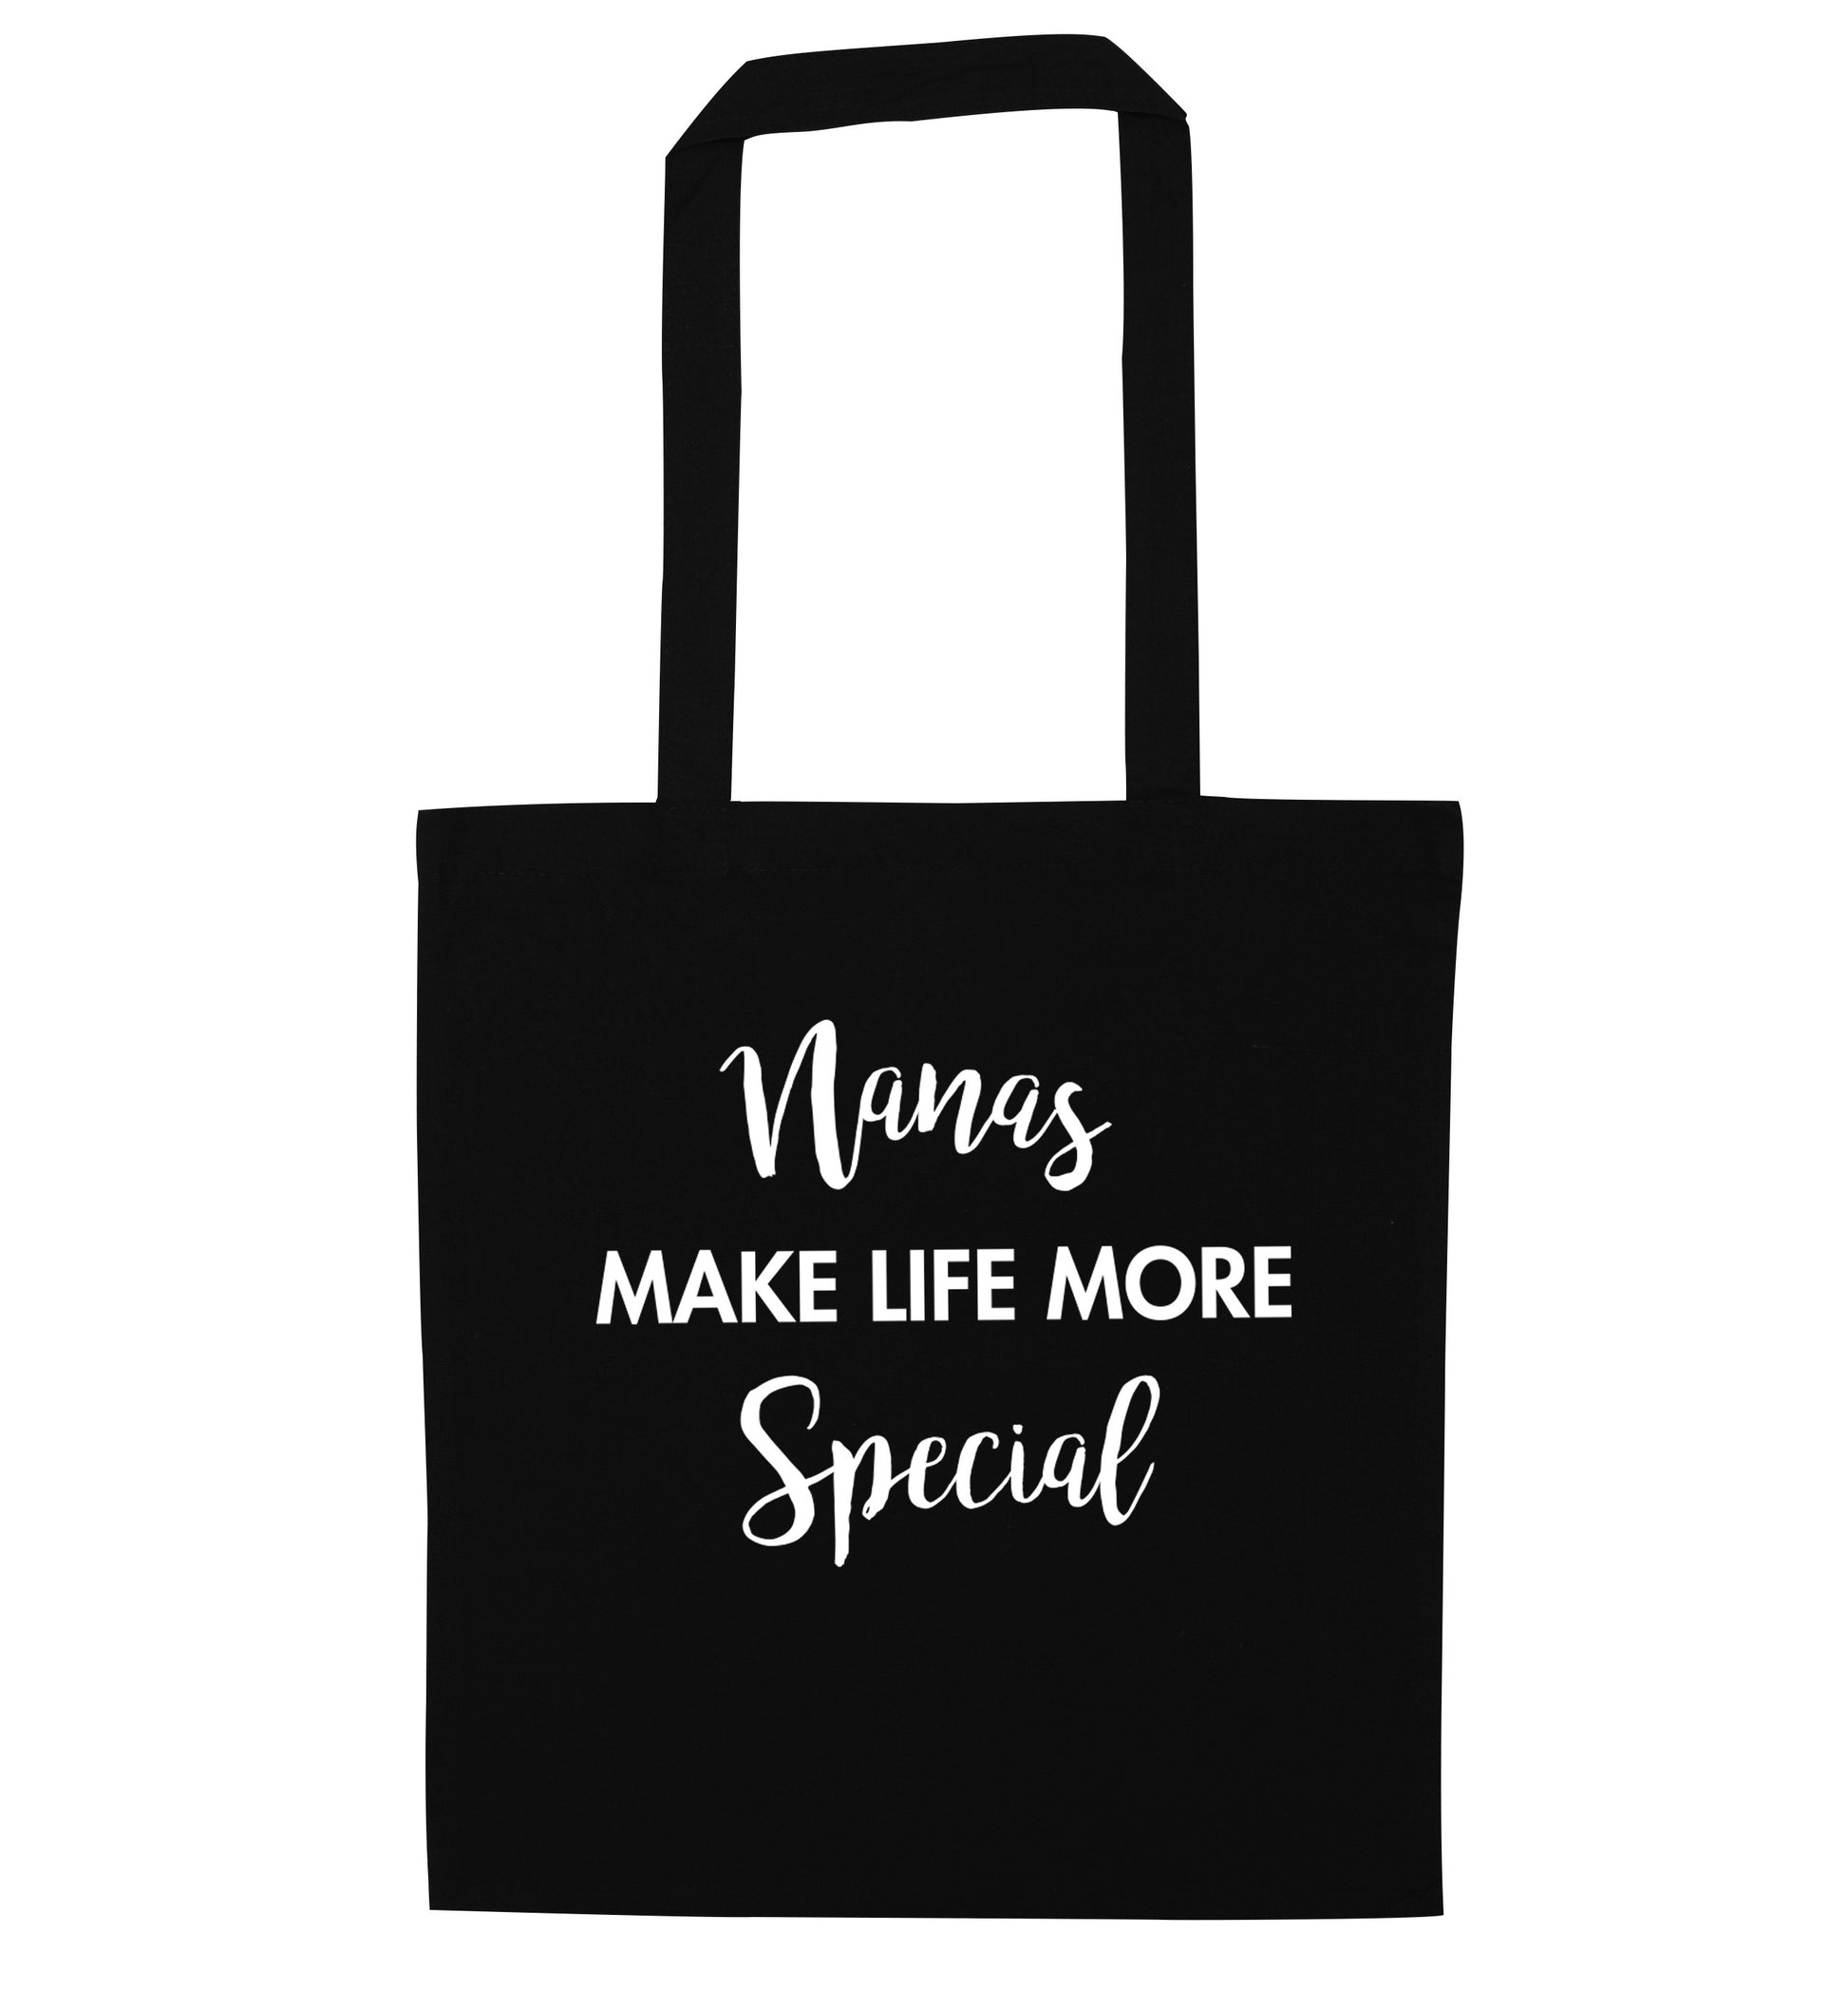 Nanas make life more special black tote bag